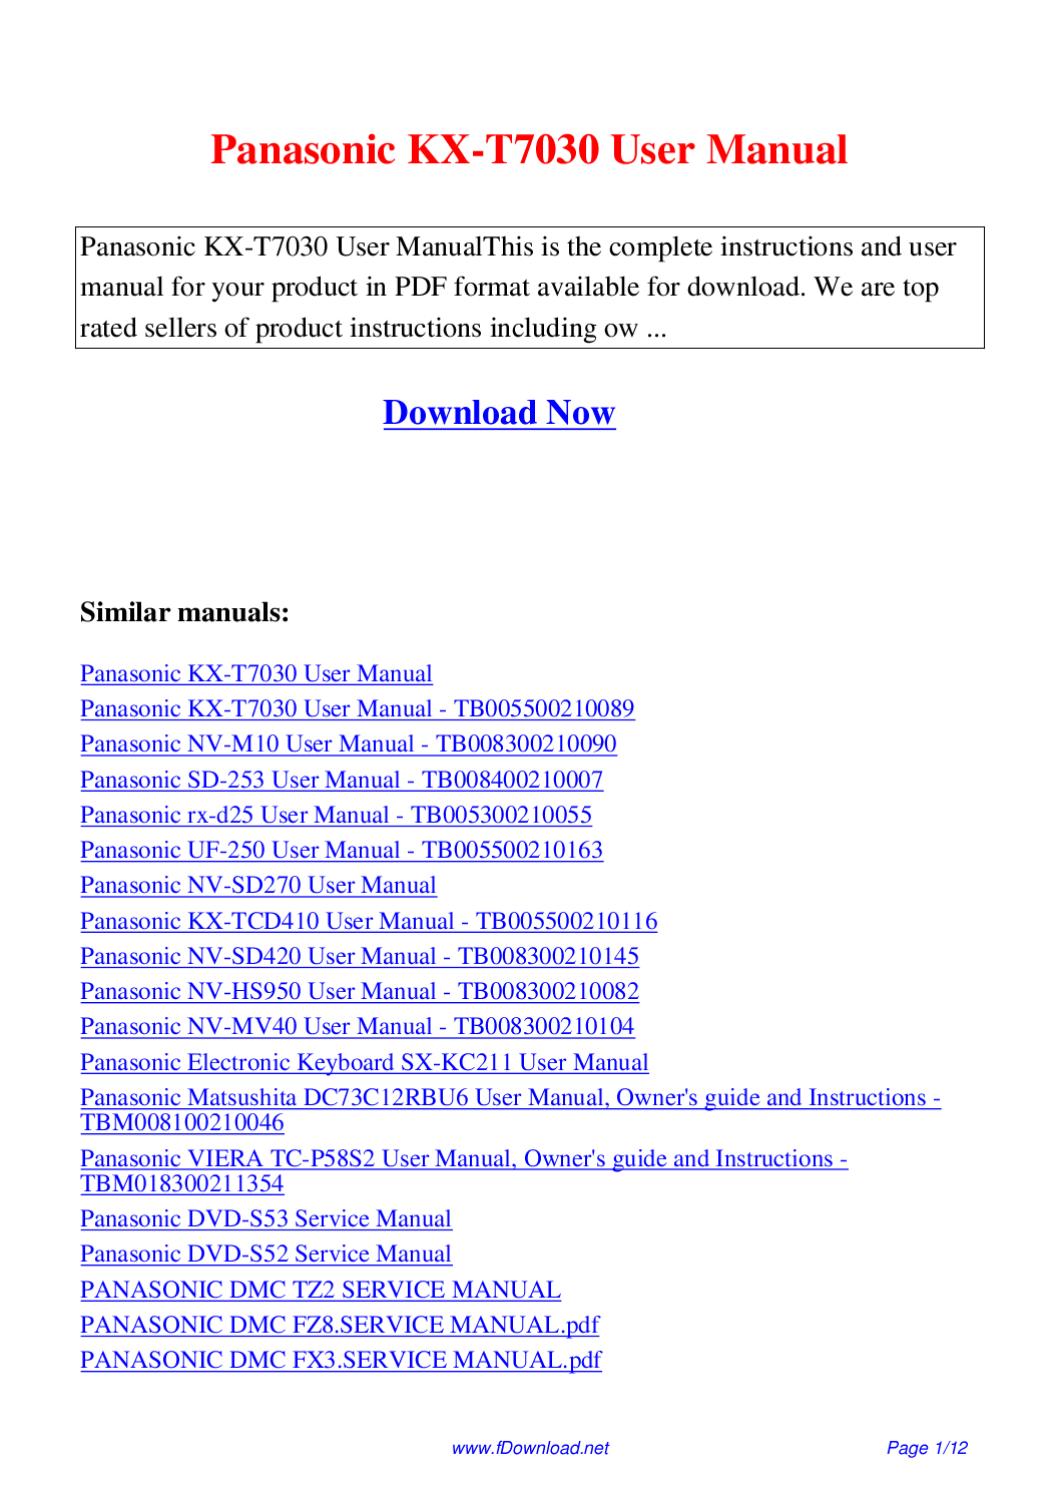 Panasonic sd p104 manual pdf